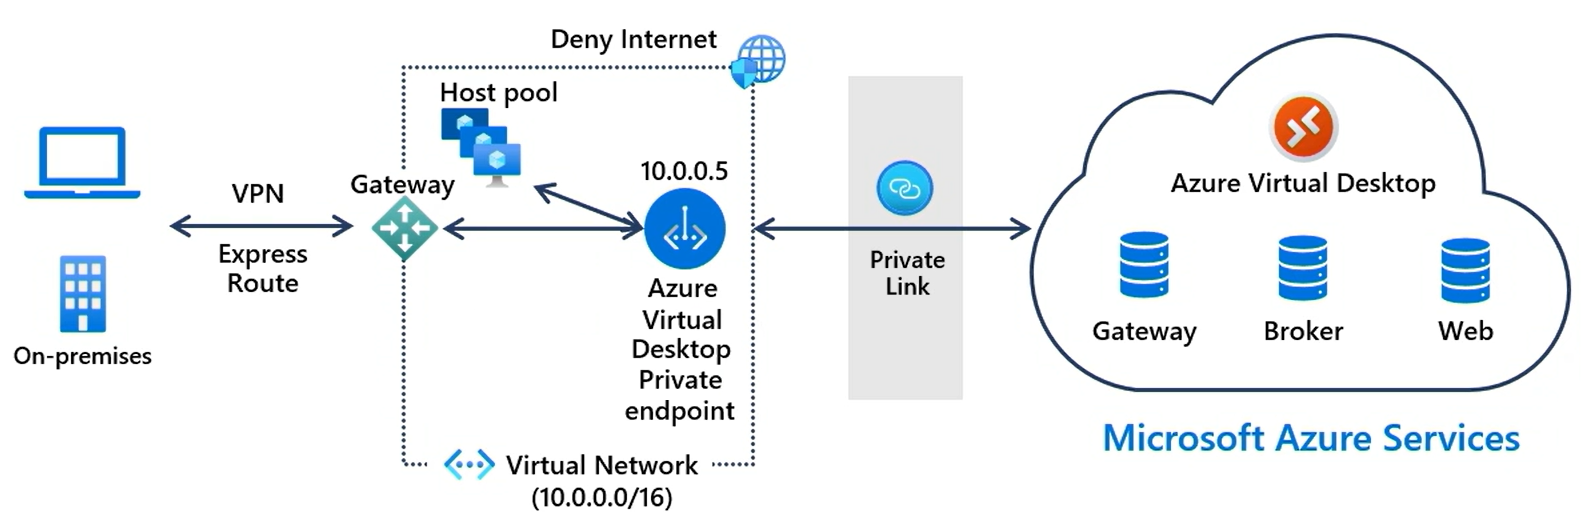 Diagrama de alto nivel que muestra cómo Private Link conecta un cliente local al servicio Azure Virtual Desktop.